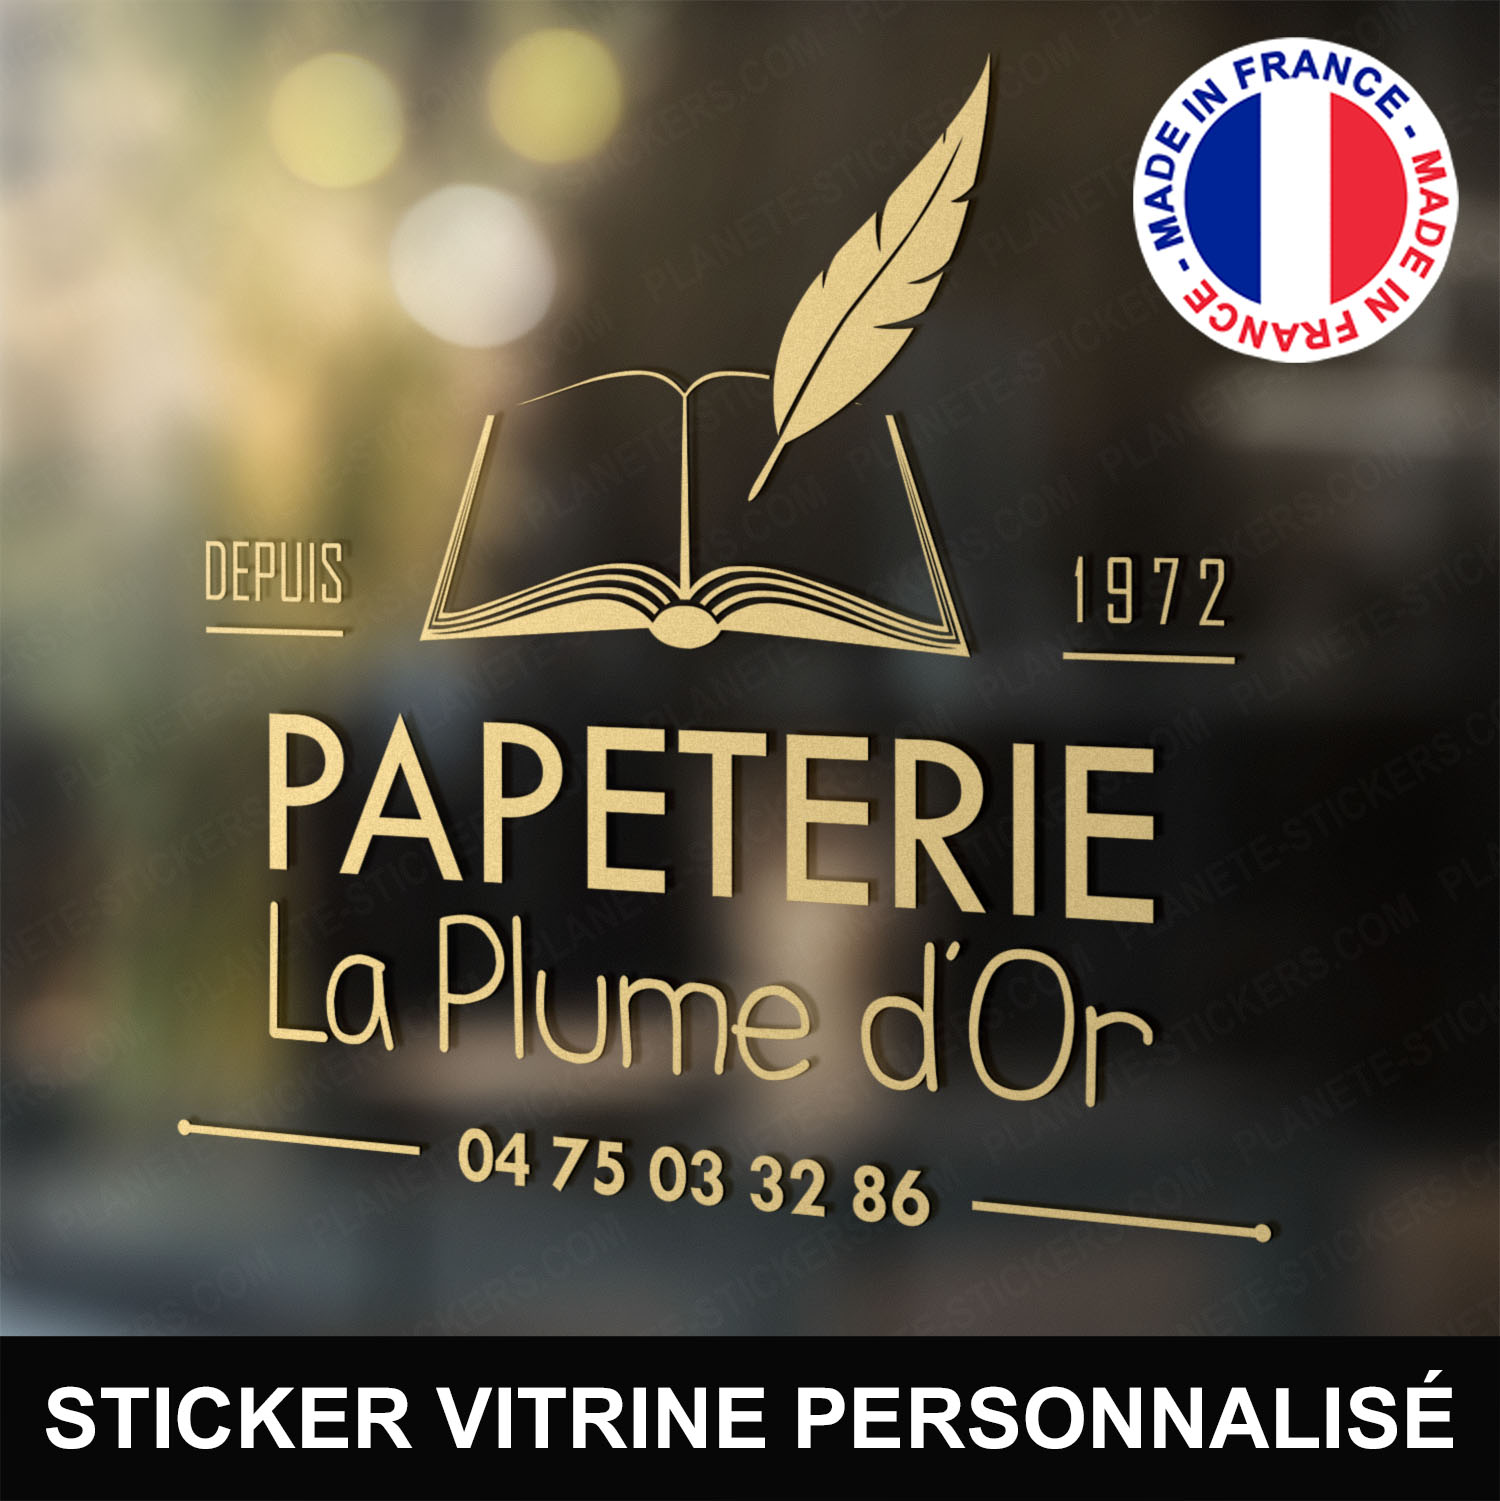 ref6papeterievitrine-stickers-papeterie-vitrine-sticker-personnalisé-autocollant-pro-papetier-vitre-professionnel-logo-plume-livre